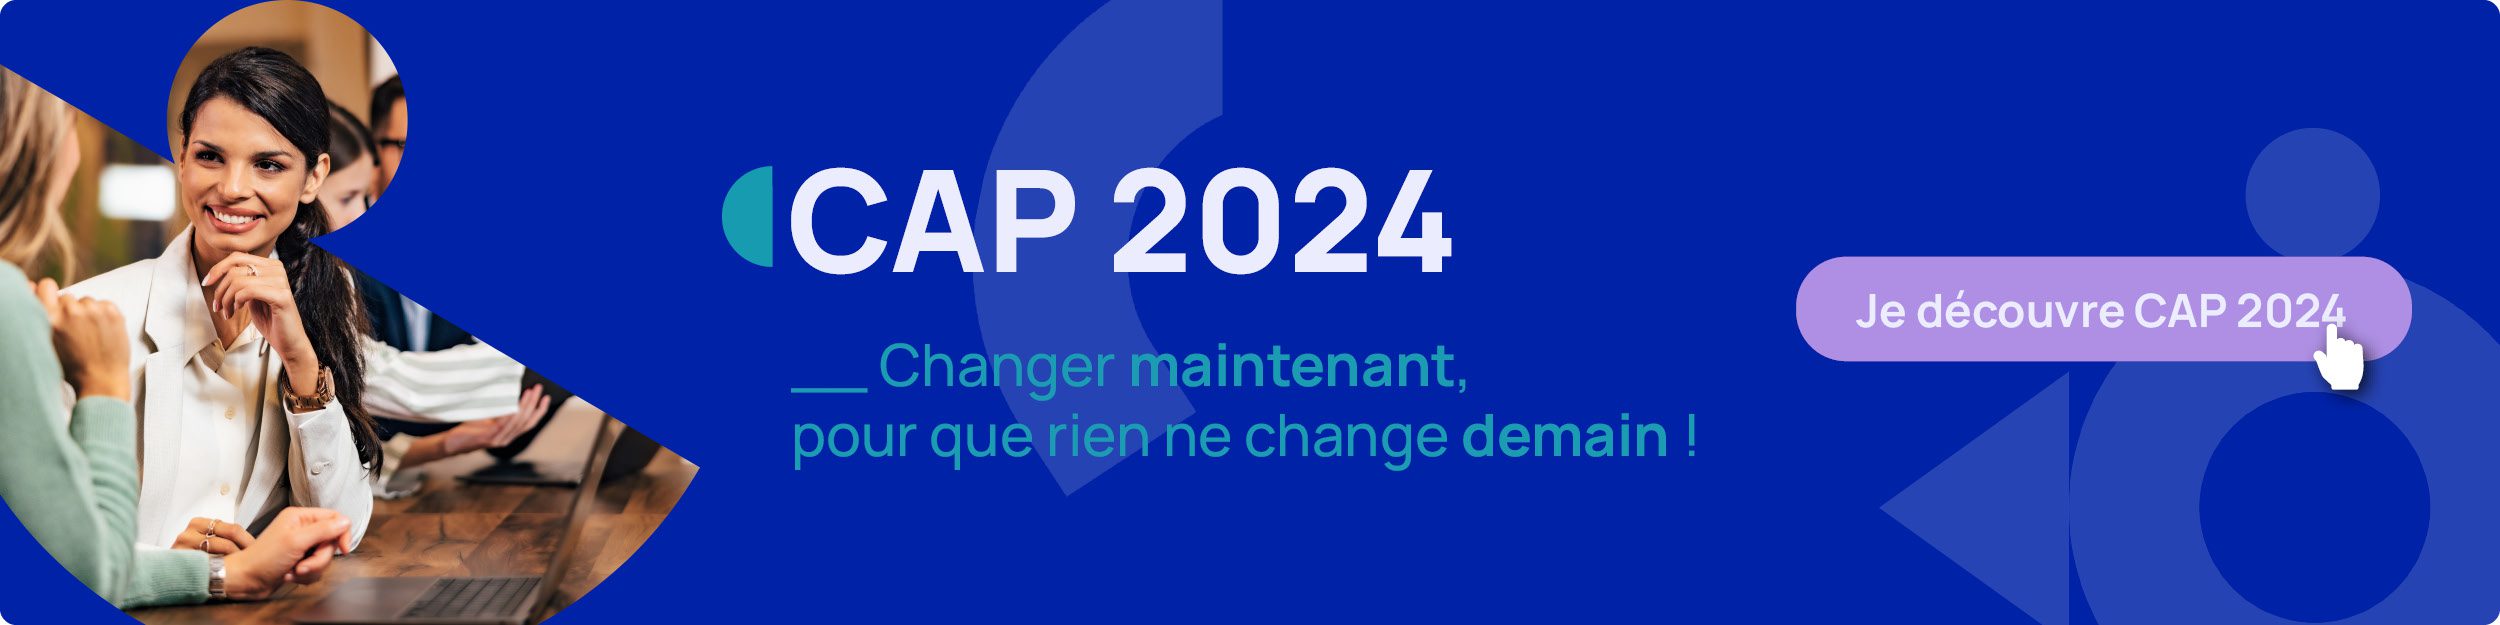 Bannière pour découvrir CAP 2024